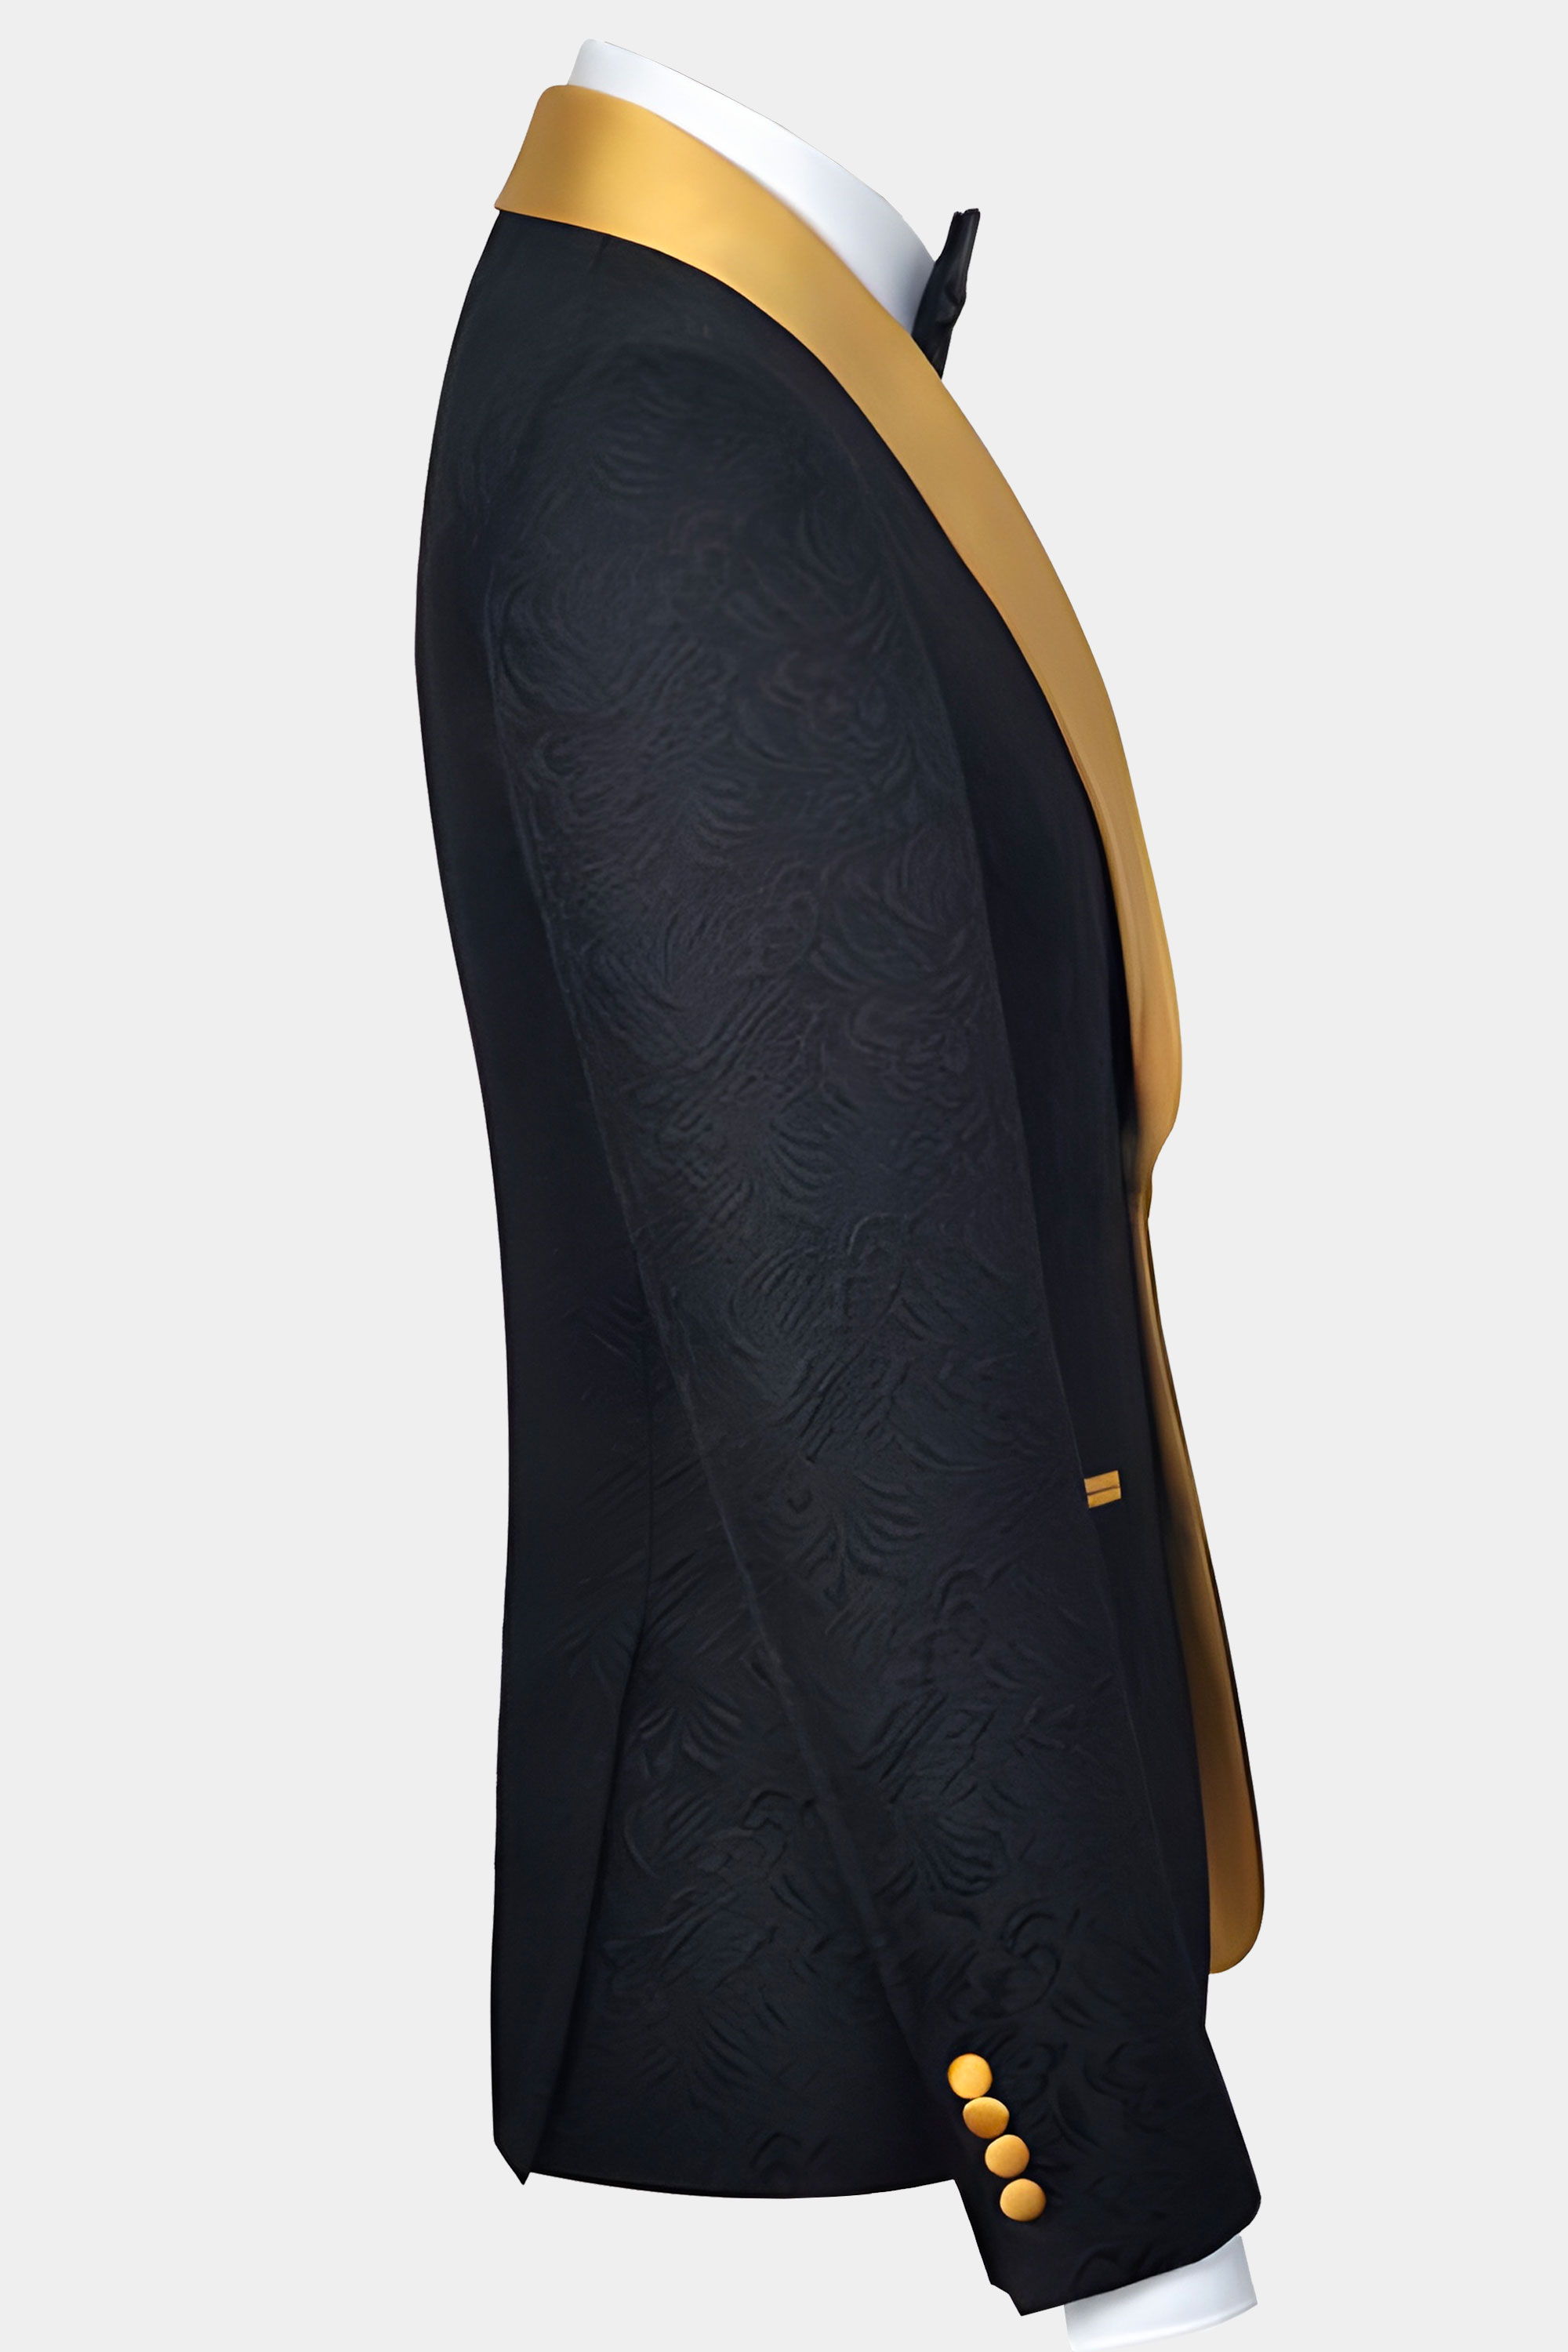 Black-and-Gold-Tuxedo-Wedding-Groom-Jacket-from-Gentlemansguru.com